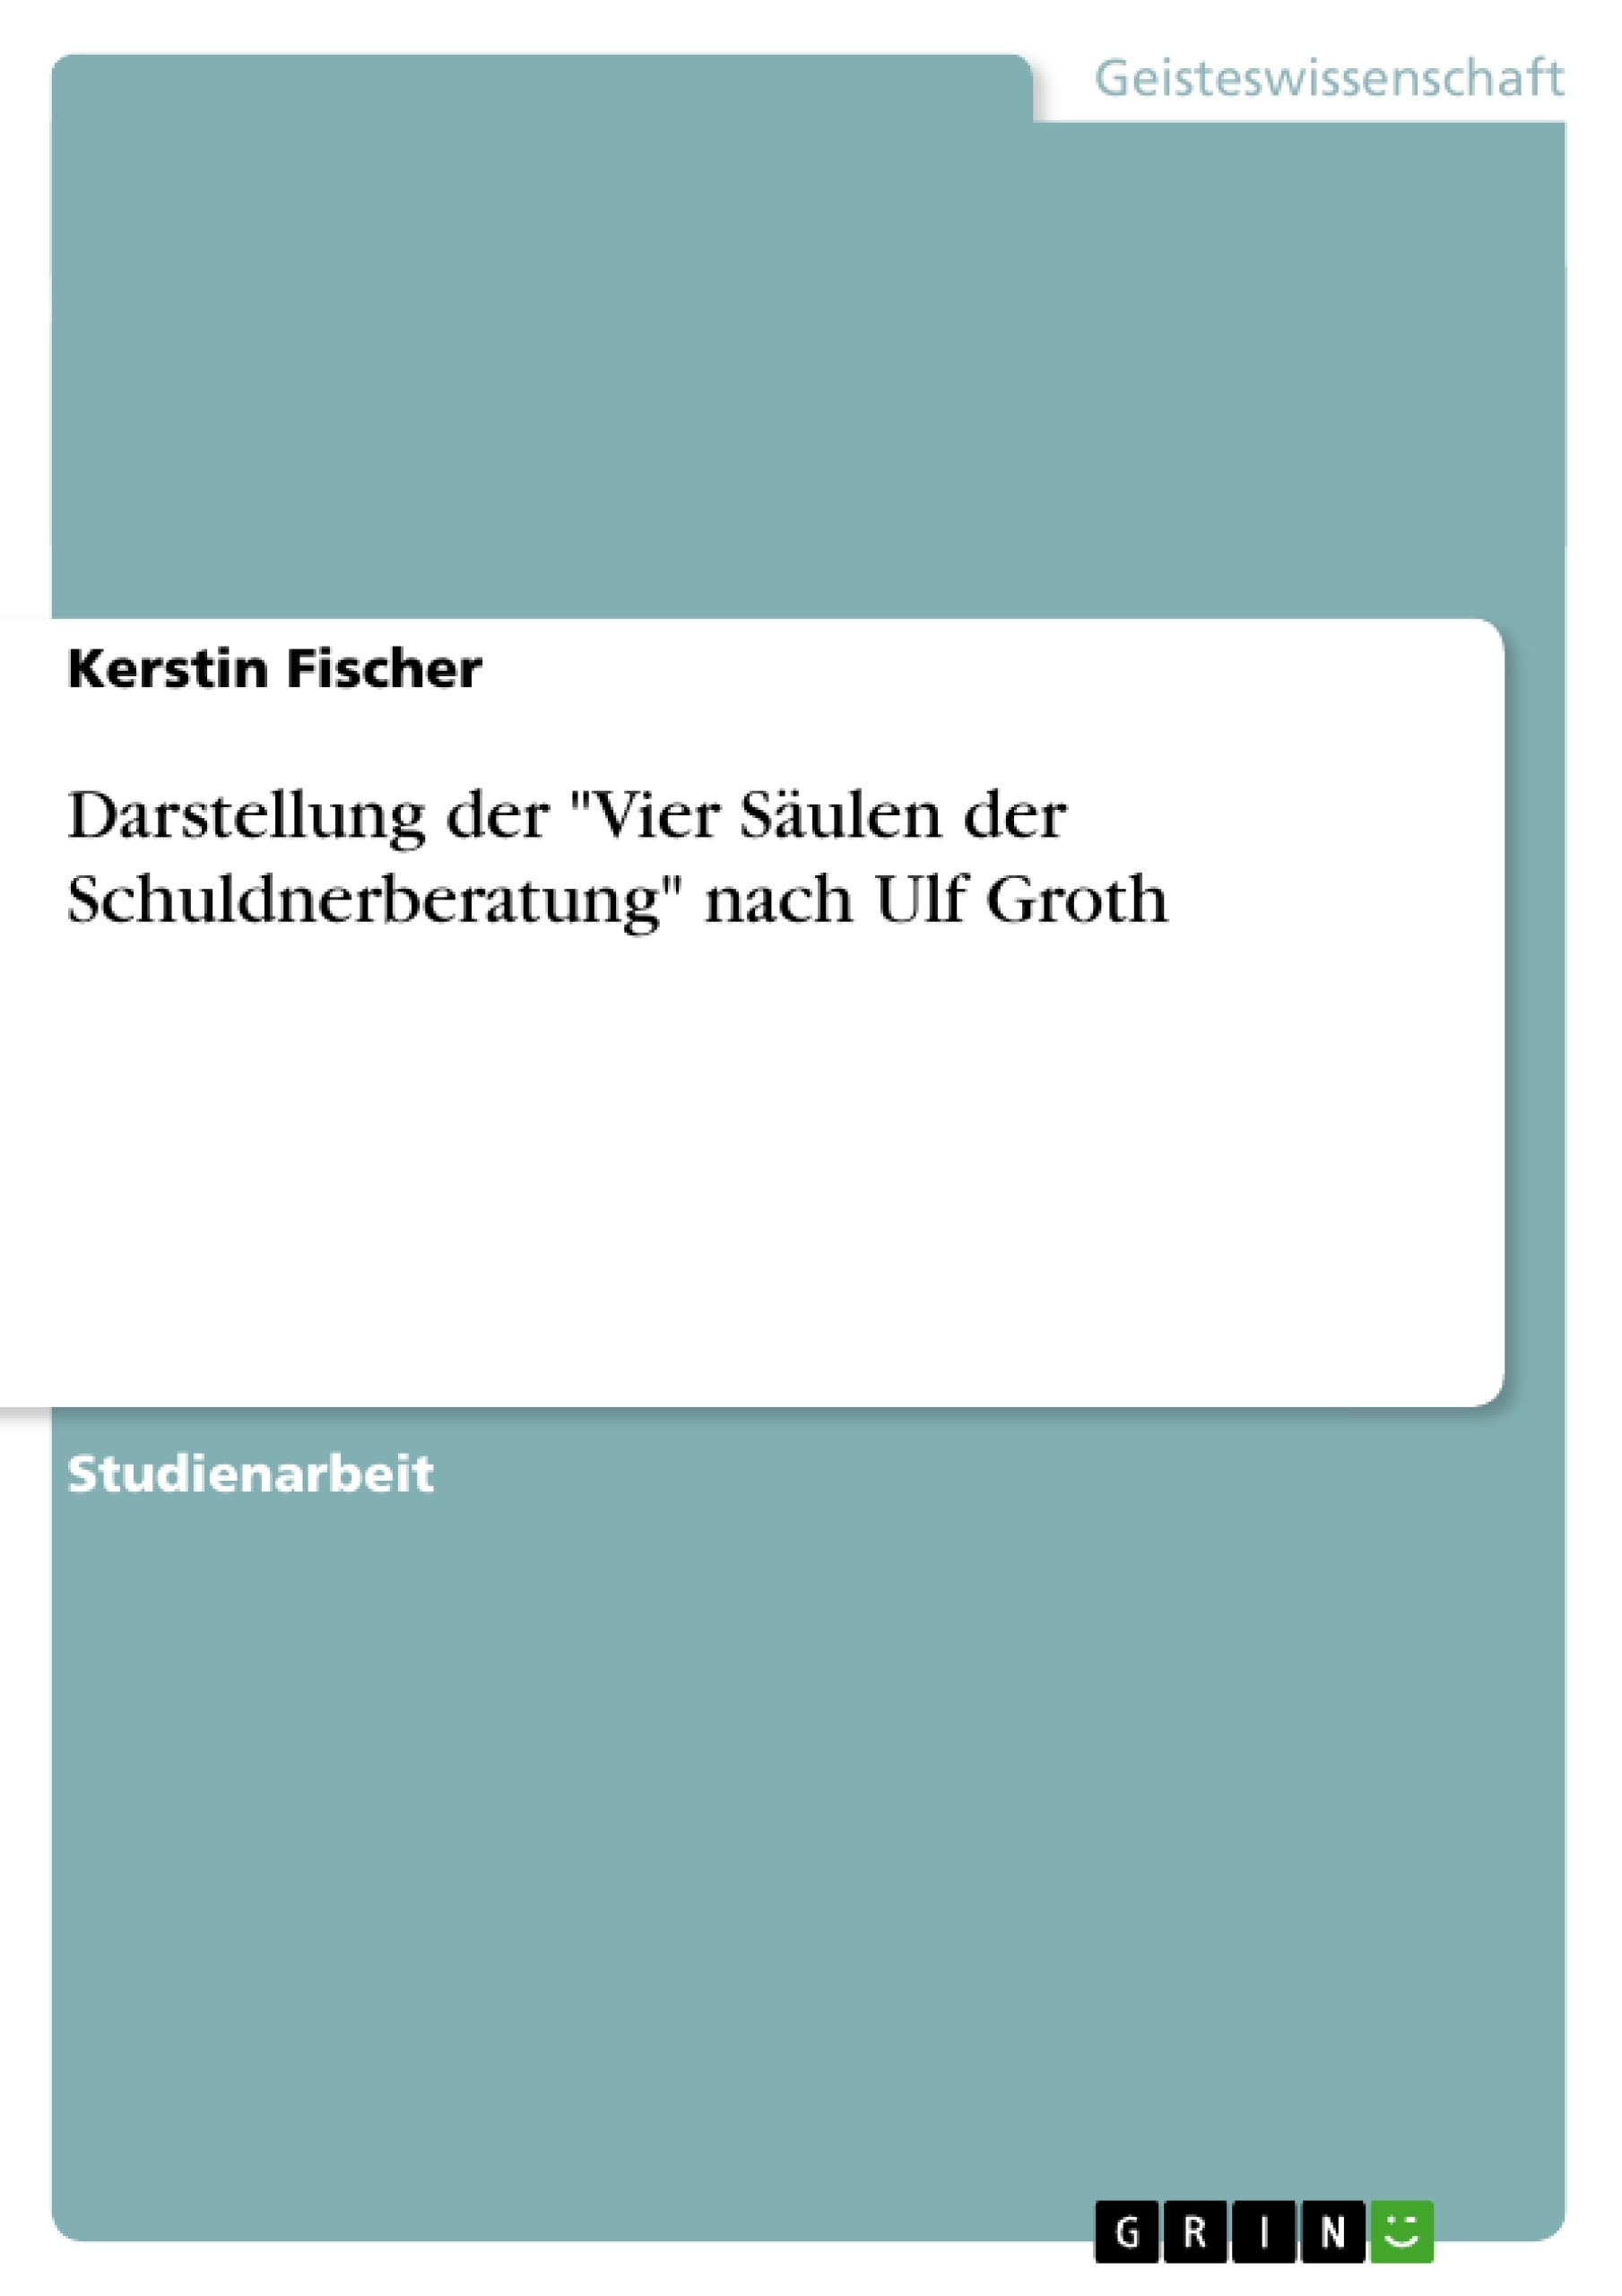 Title: Darstellung der "Vier Säulen der Schuldnerberatung" nach Ulf Groth